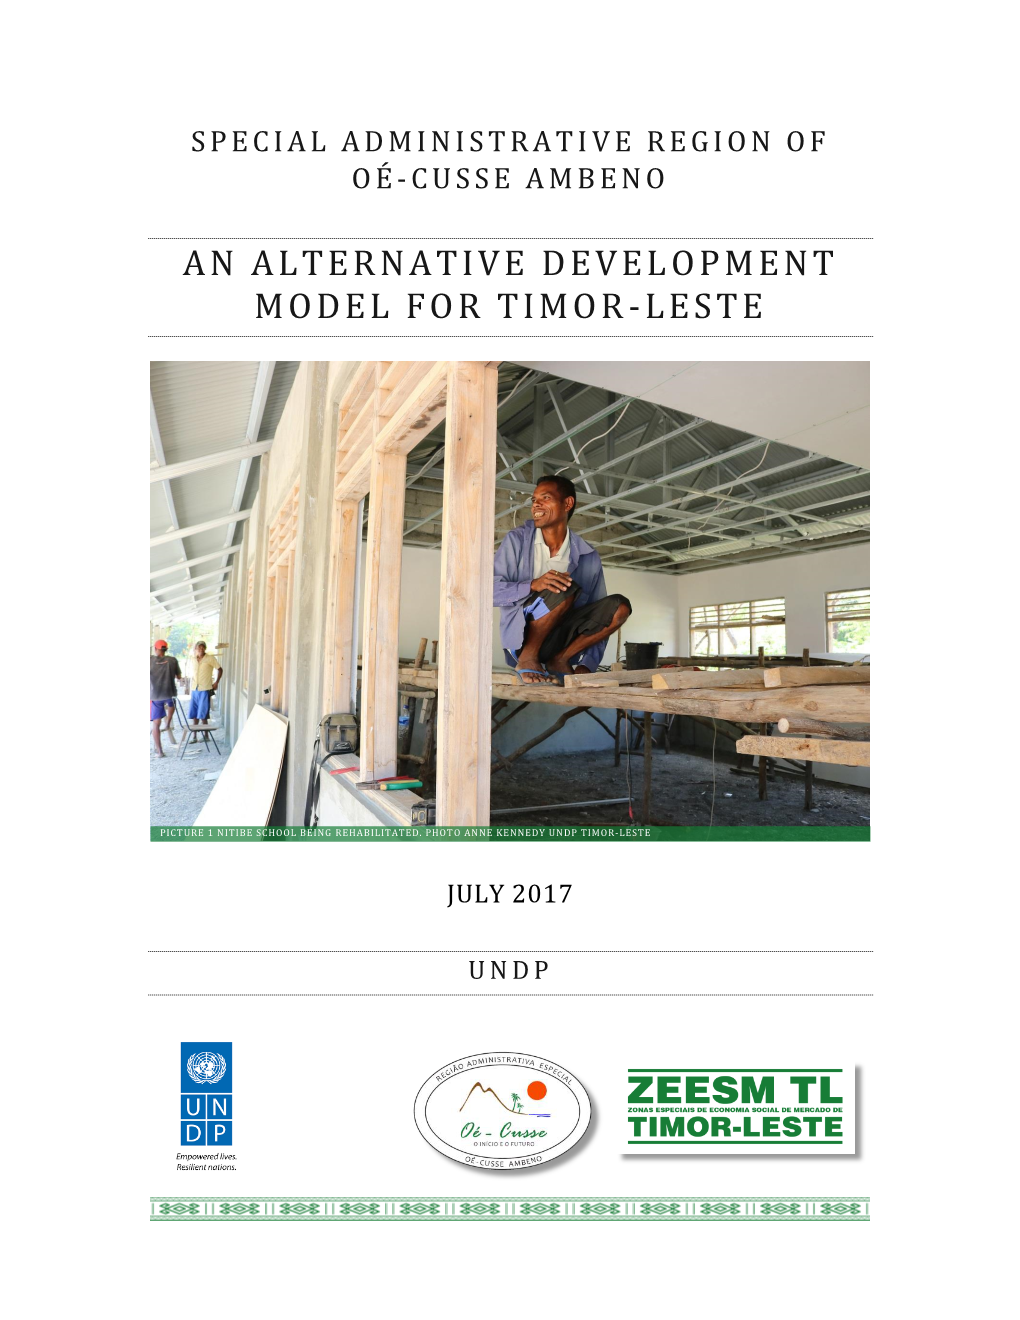 An Alternative Development Model for Timor-Leste